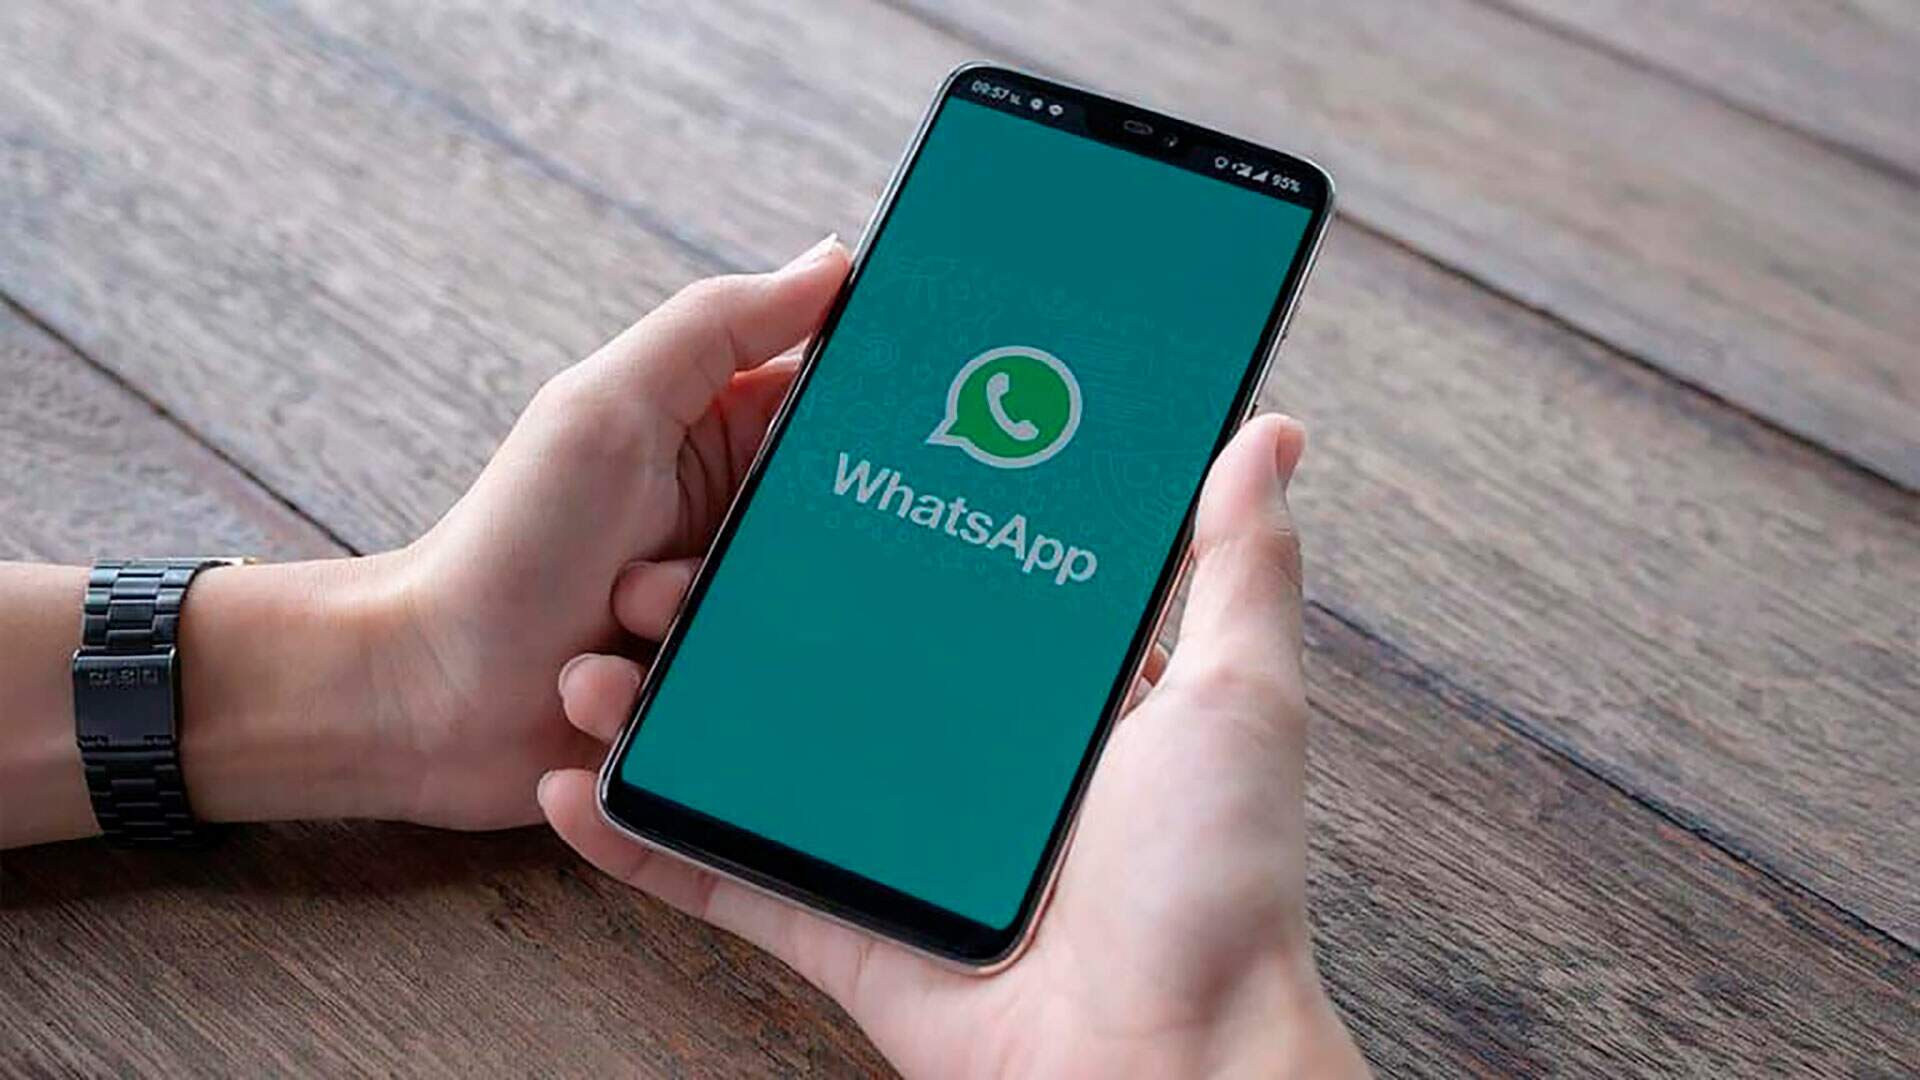 WhatsApp sai do ar no Brasil e gera polêmica: “Acabou?” - Metropolitana FM